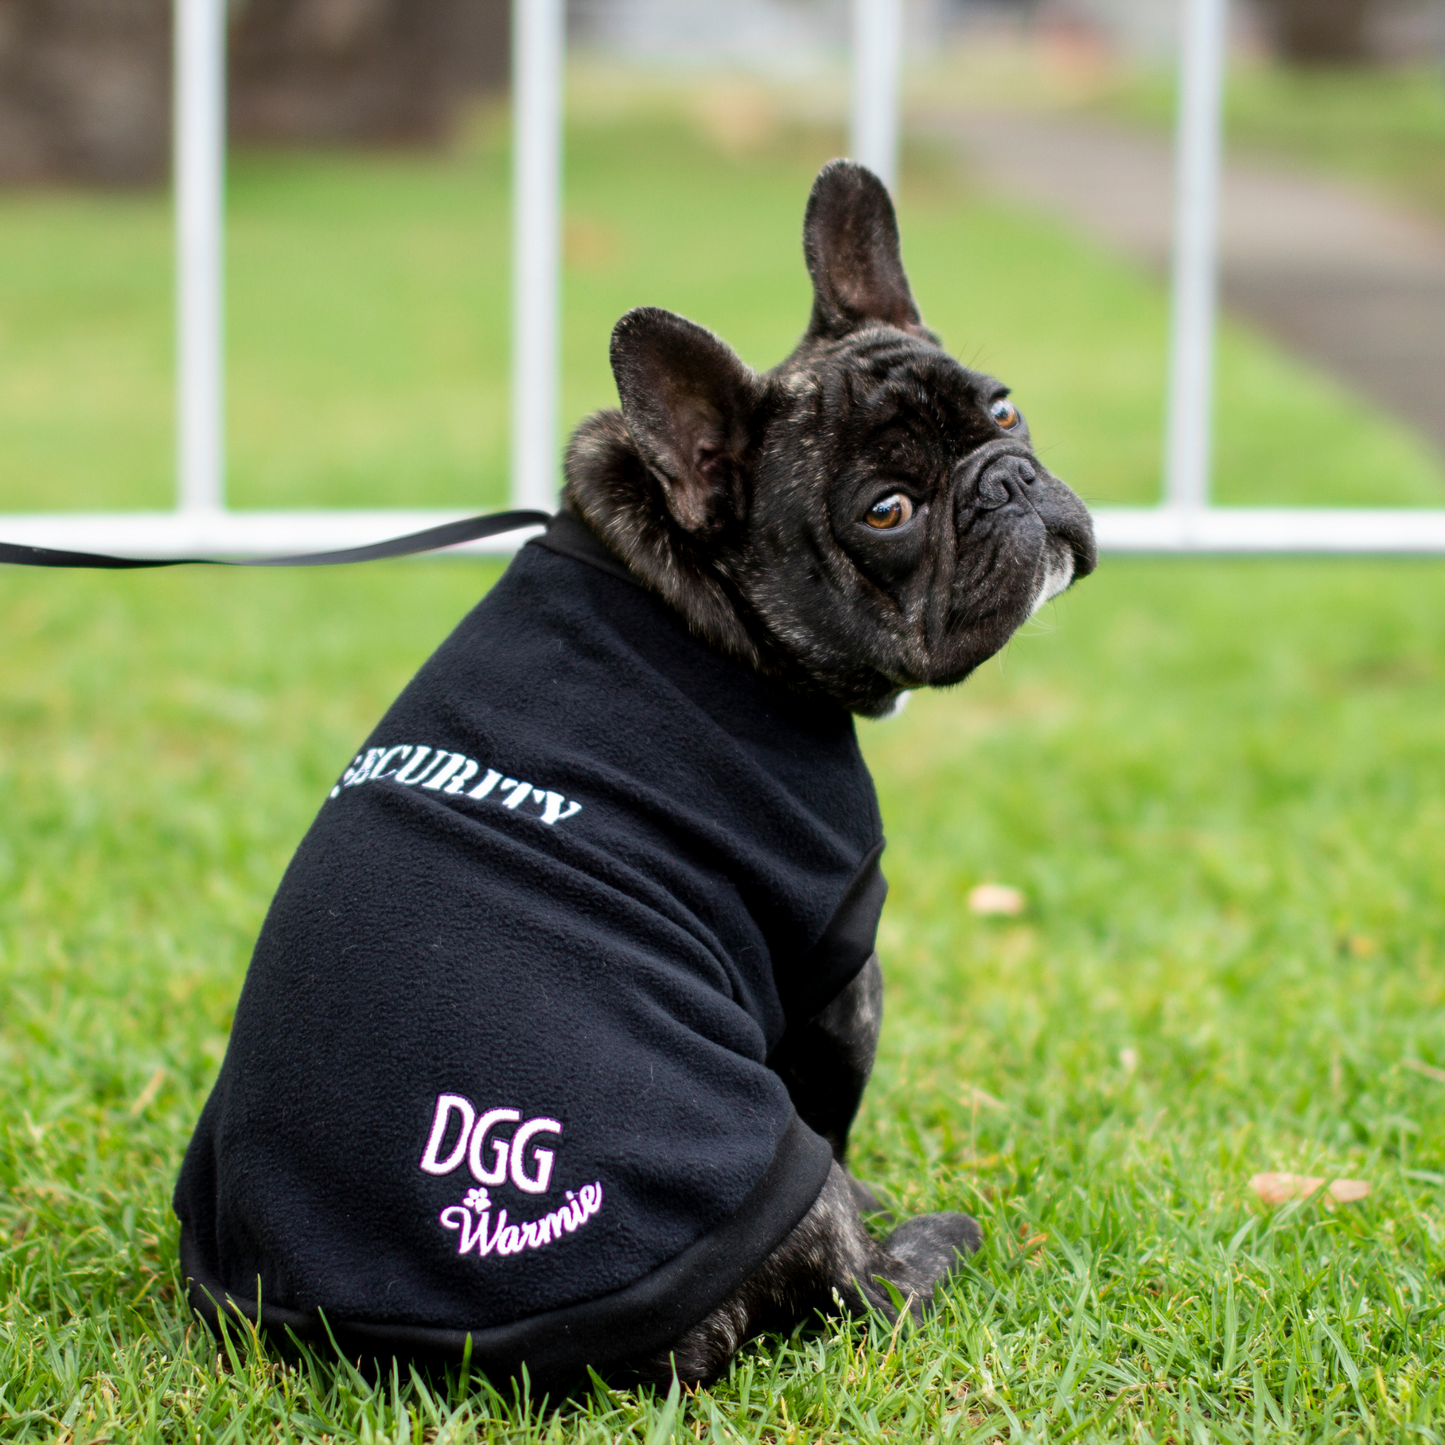 DGG Black Security Dog Jumper